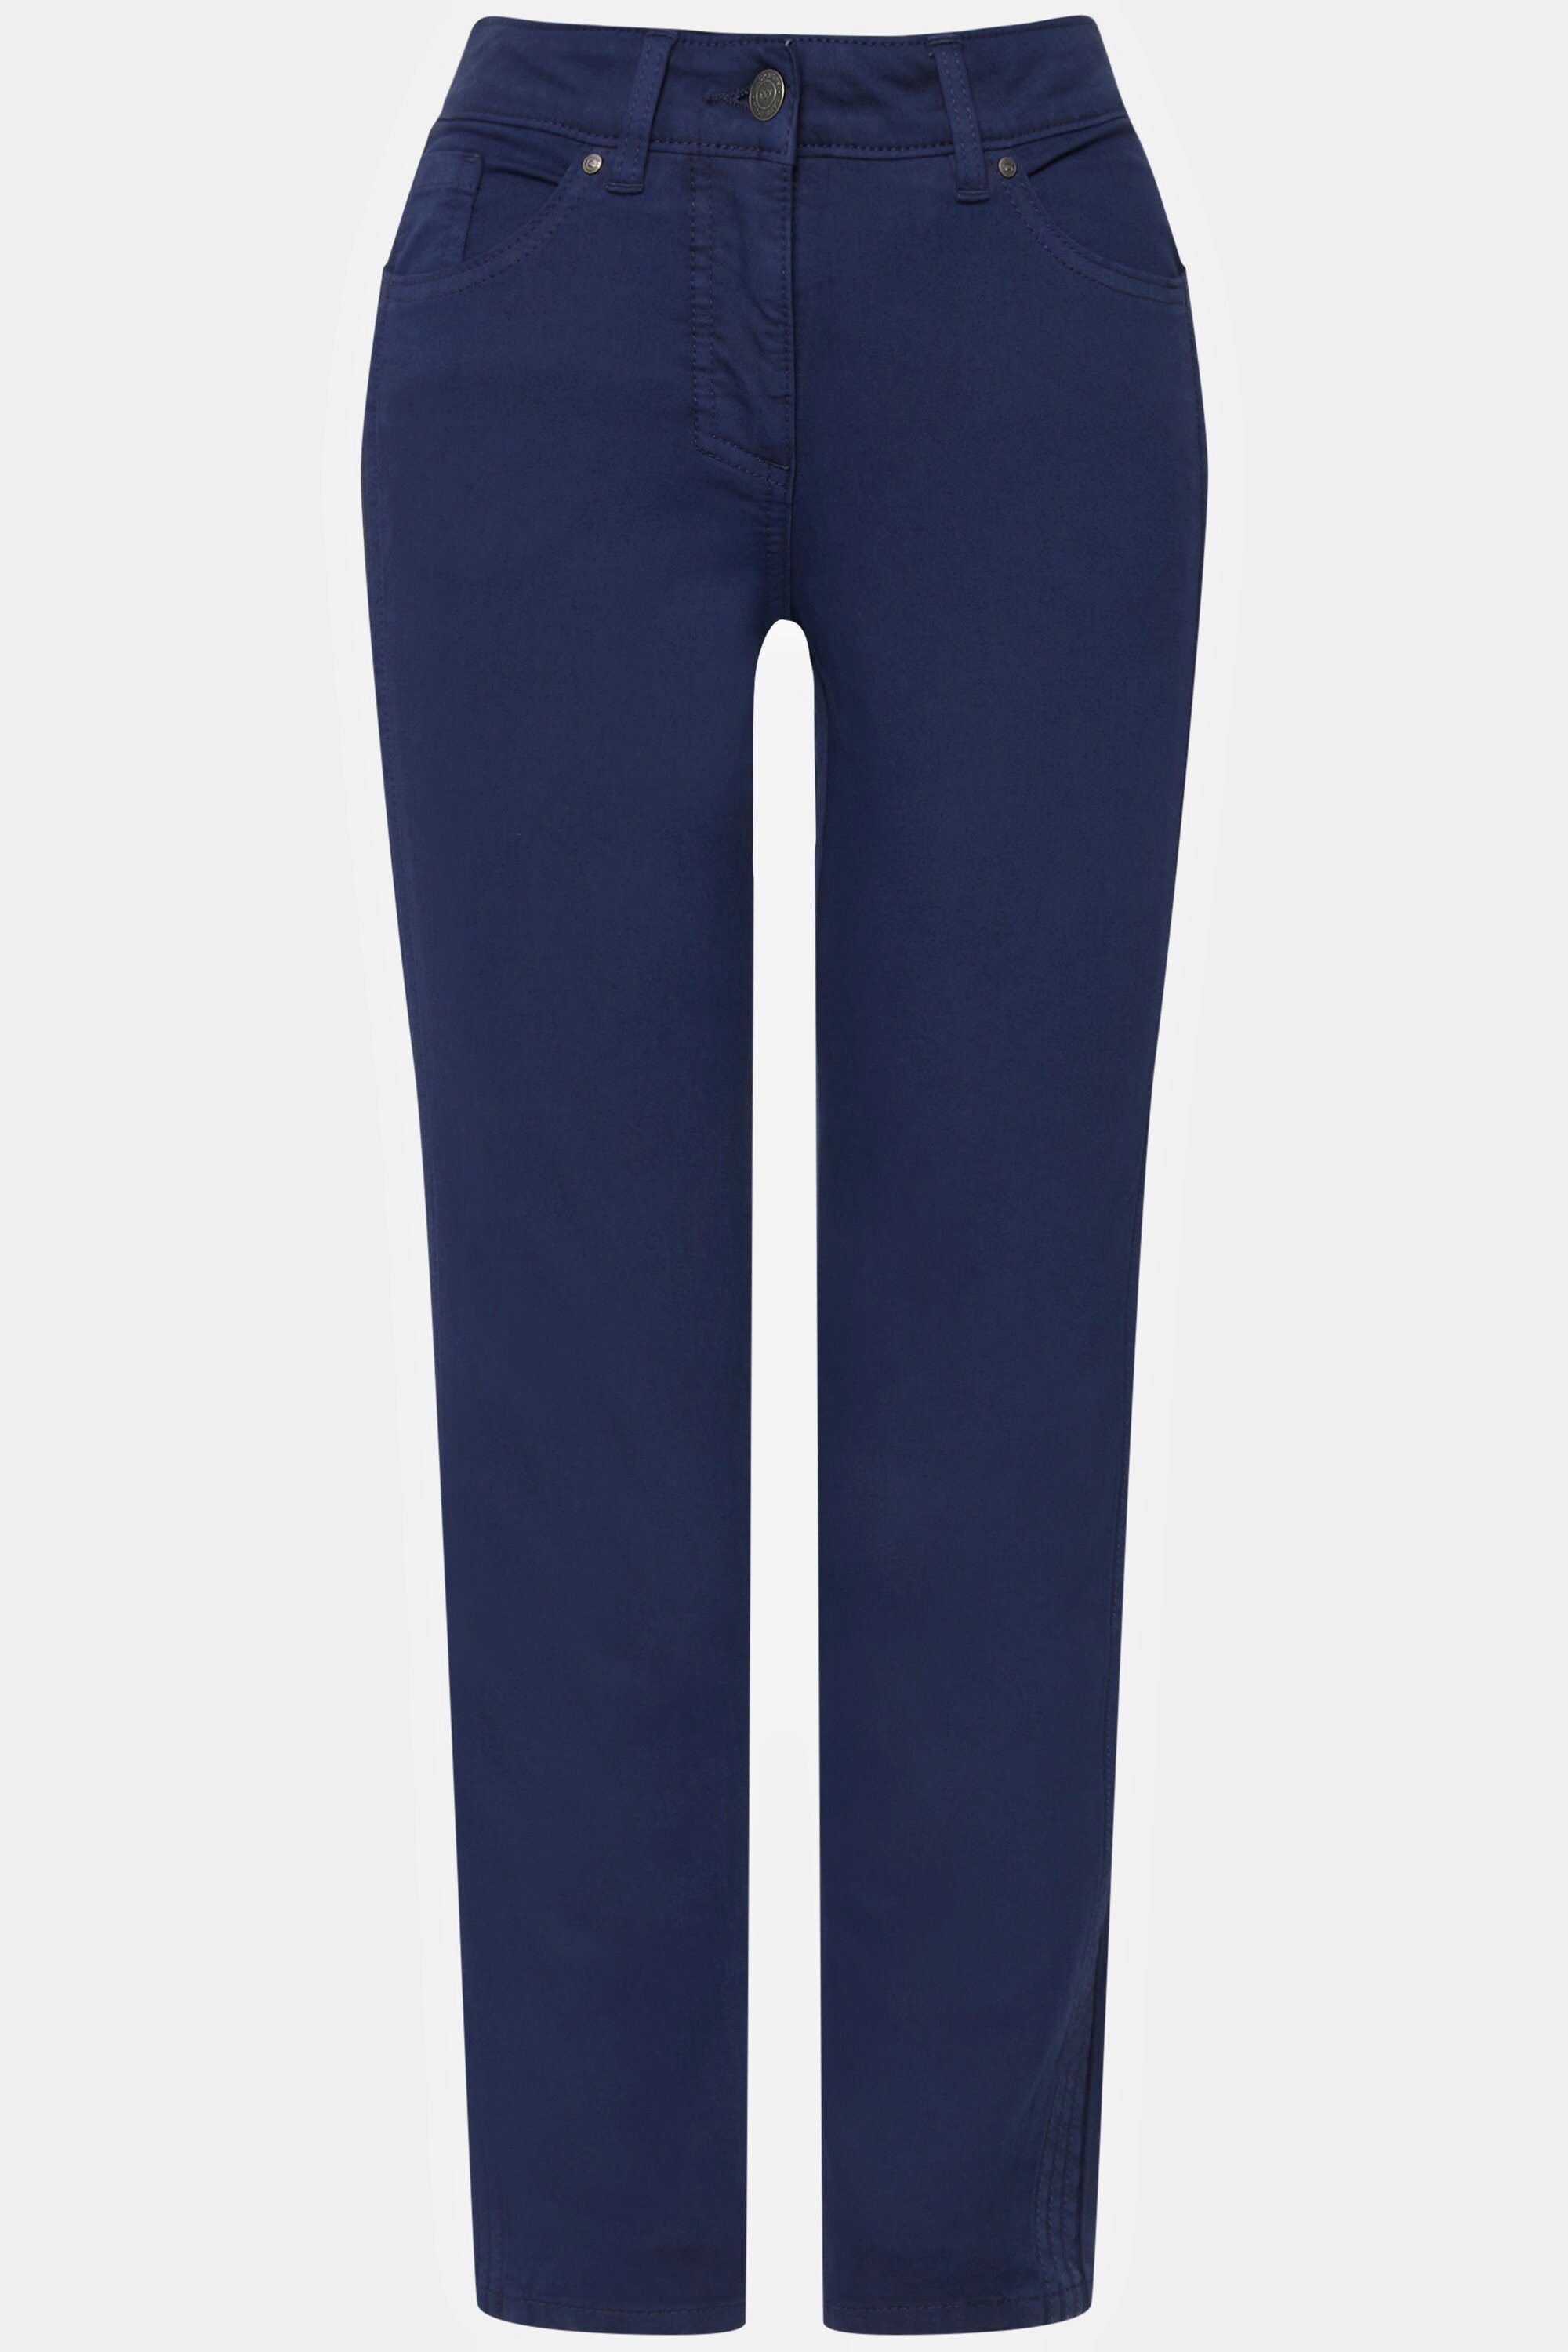 Jeans gerade 5-Pocket-Jeans seitliche Passform Laurasøn Tina Zierfalten jeansblau